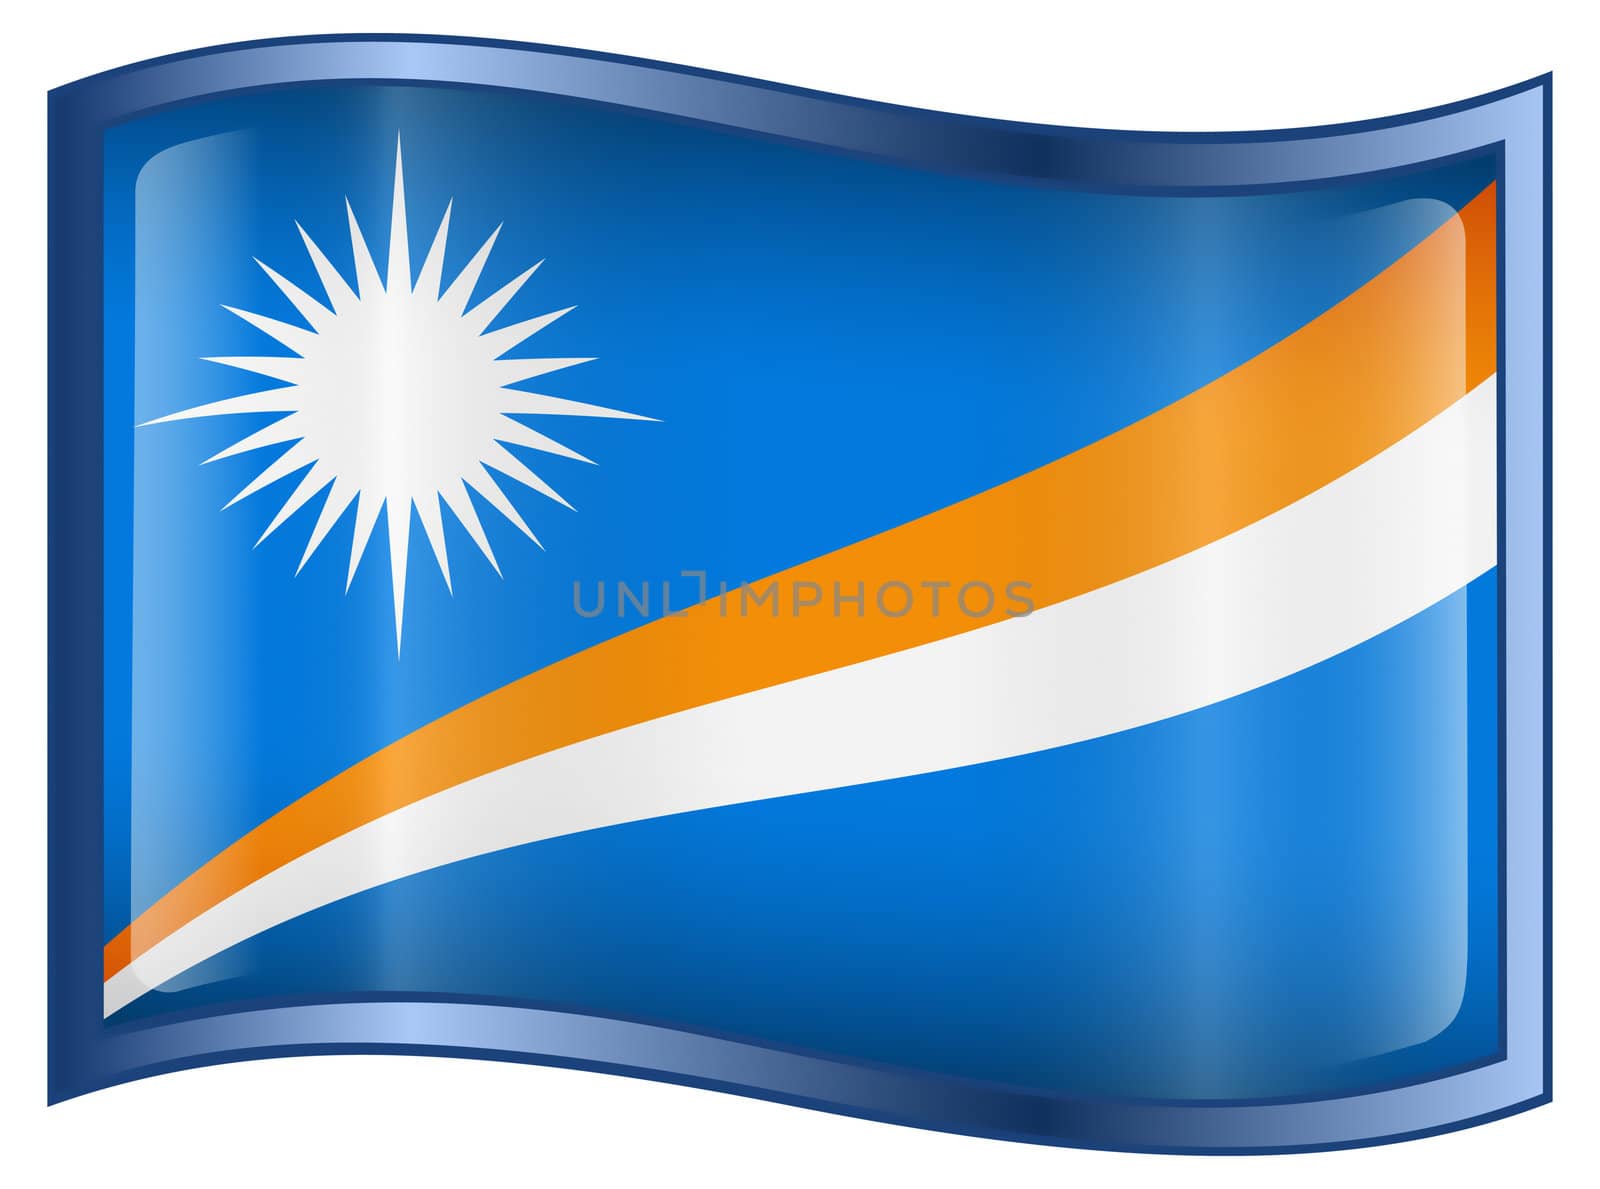 Marshall Islands Flag icon, isolated on white background.